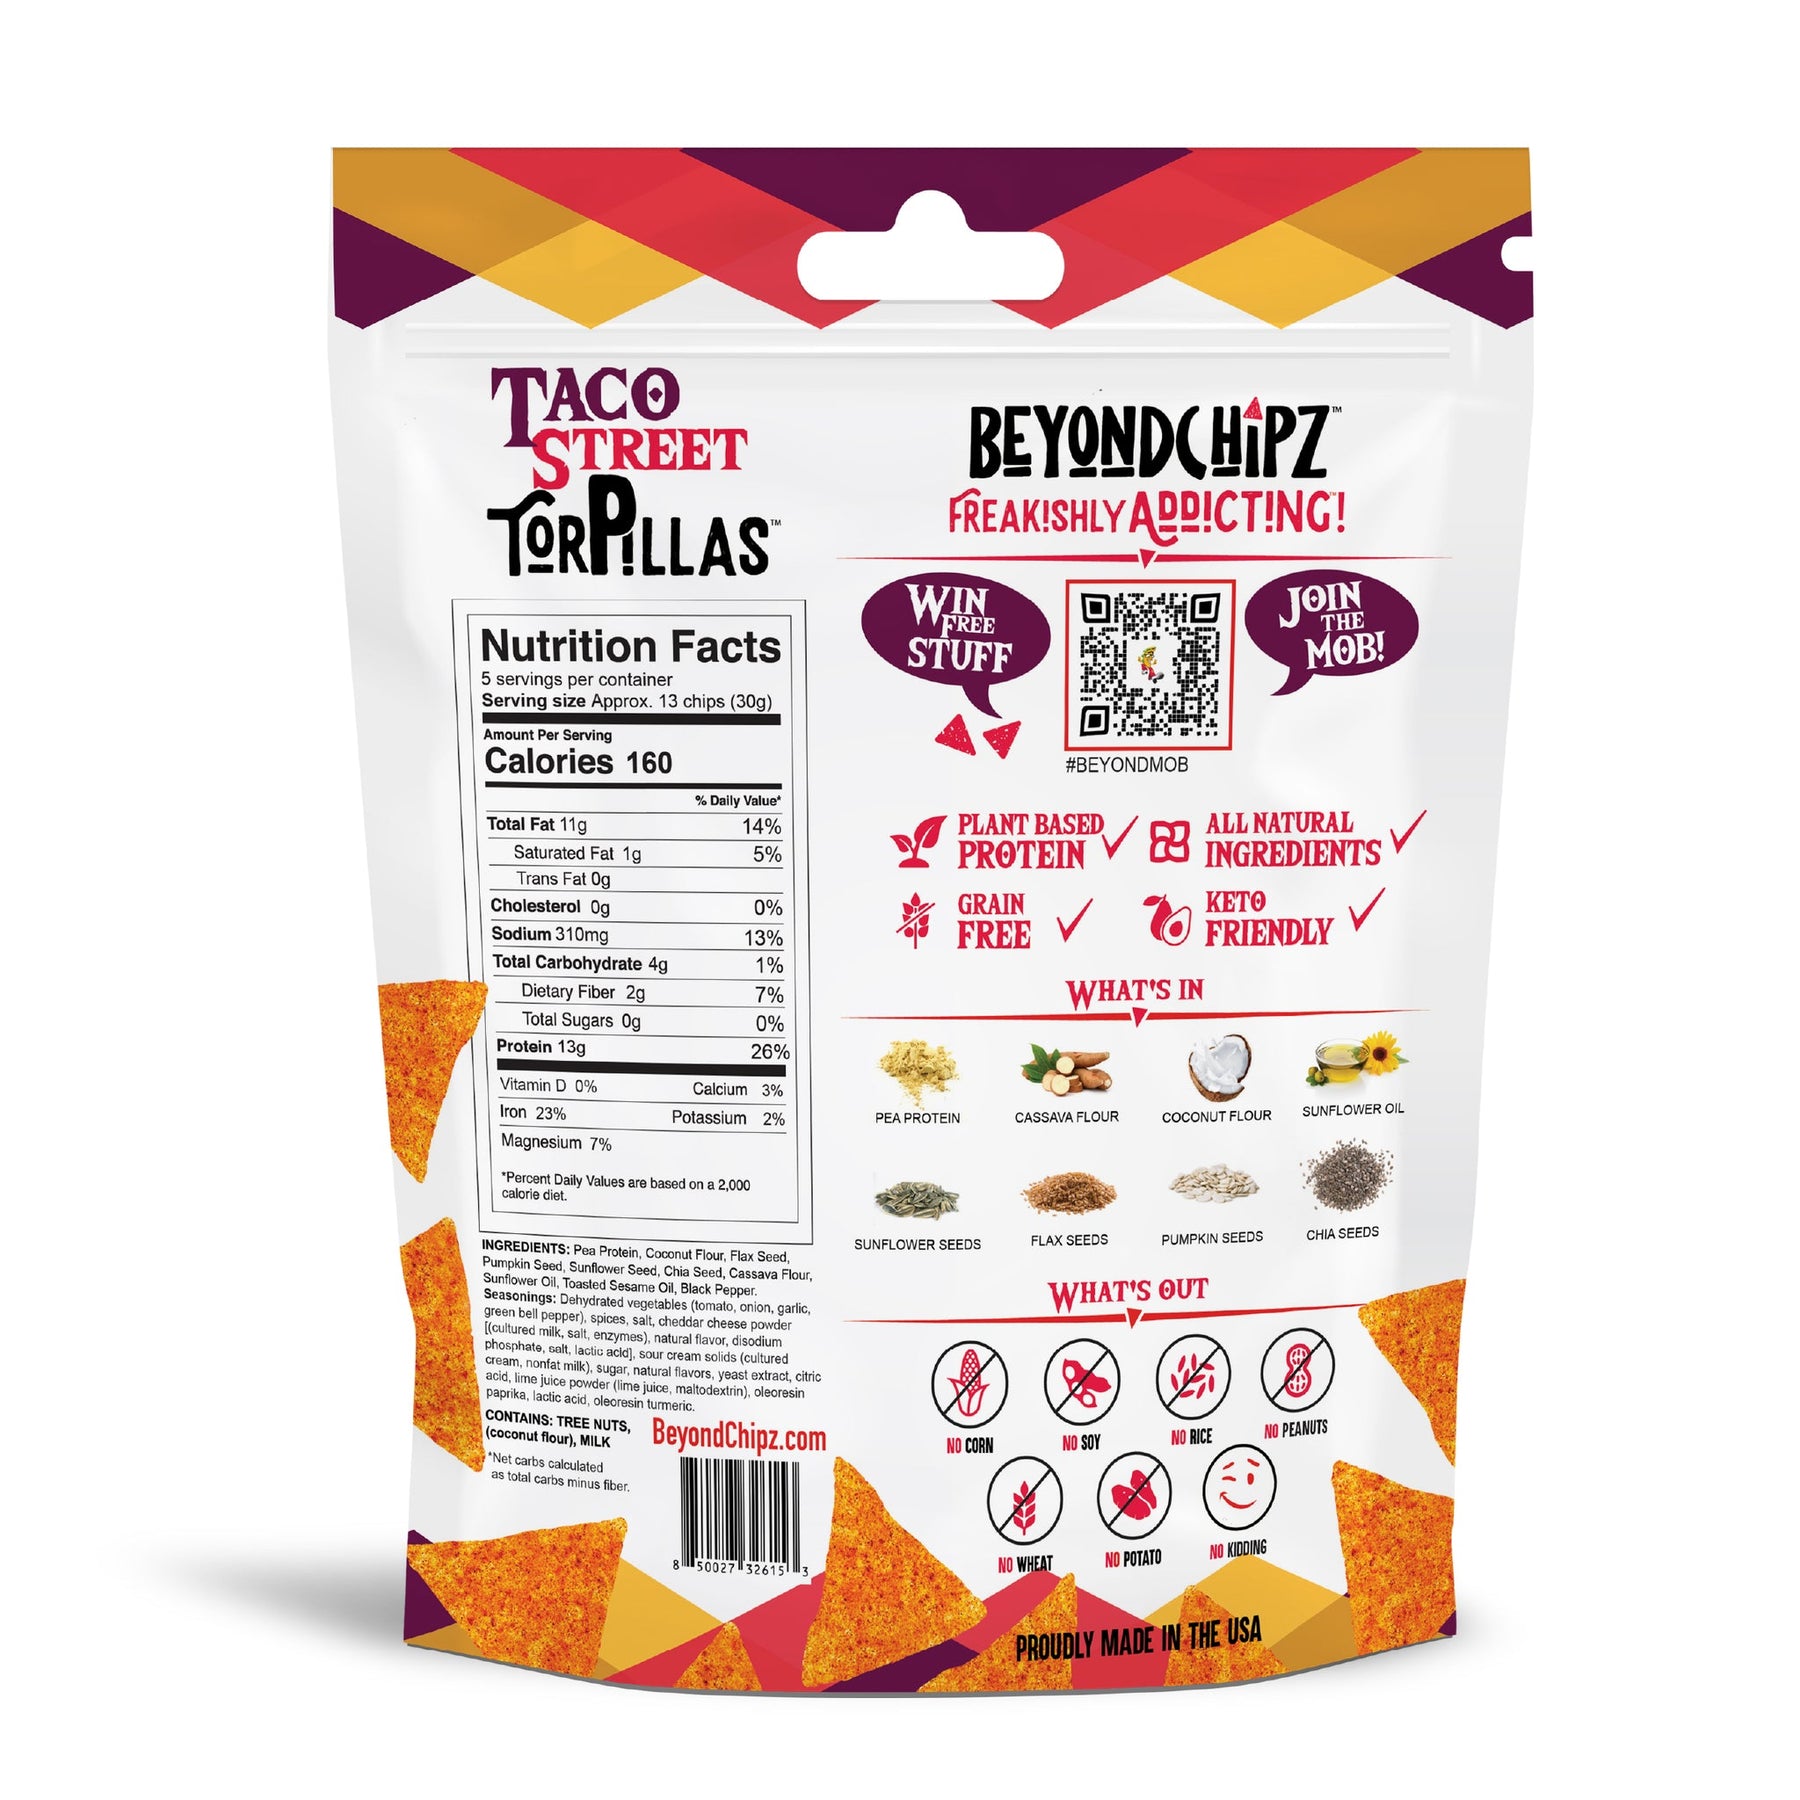 Beyond Chipz - Low Carbs Tortillas Chips - 150g